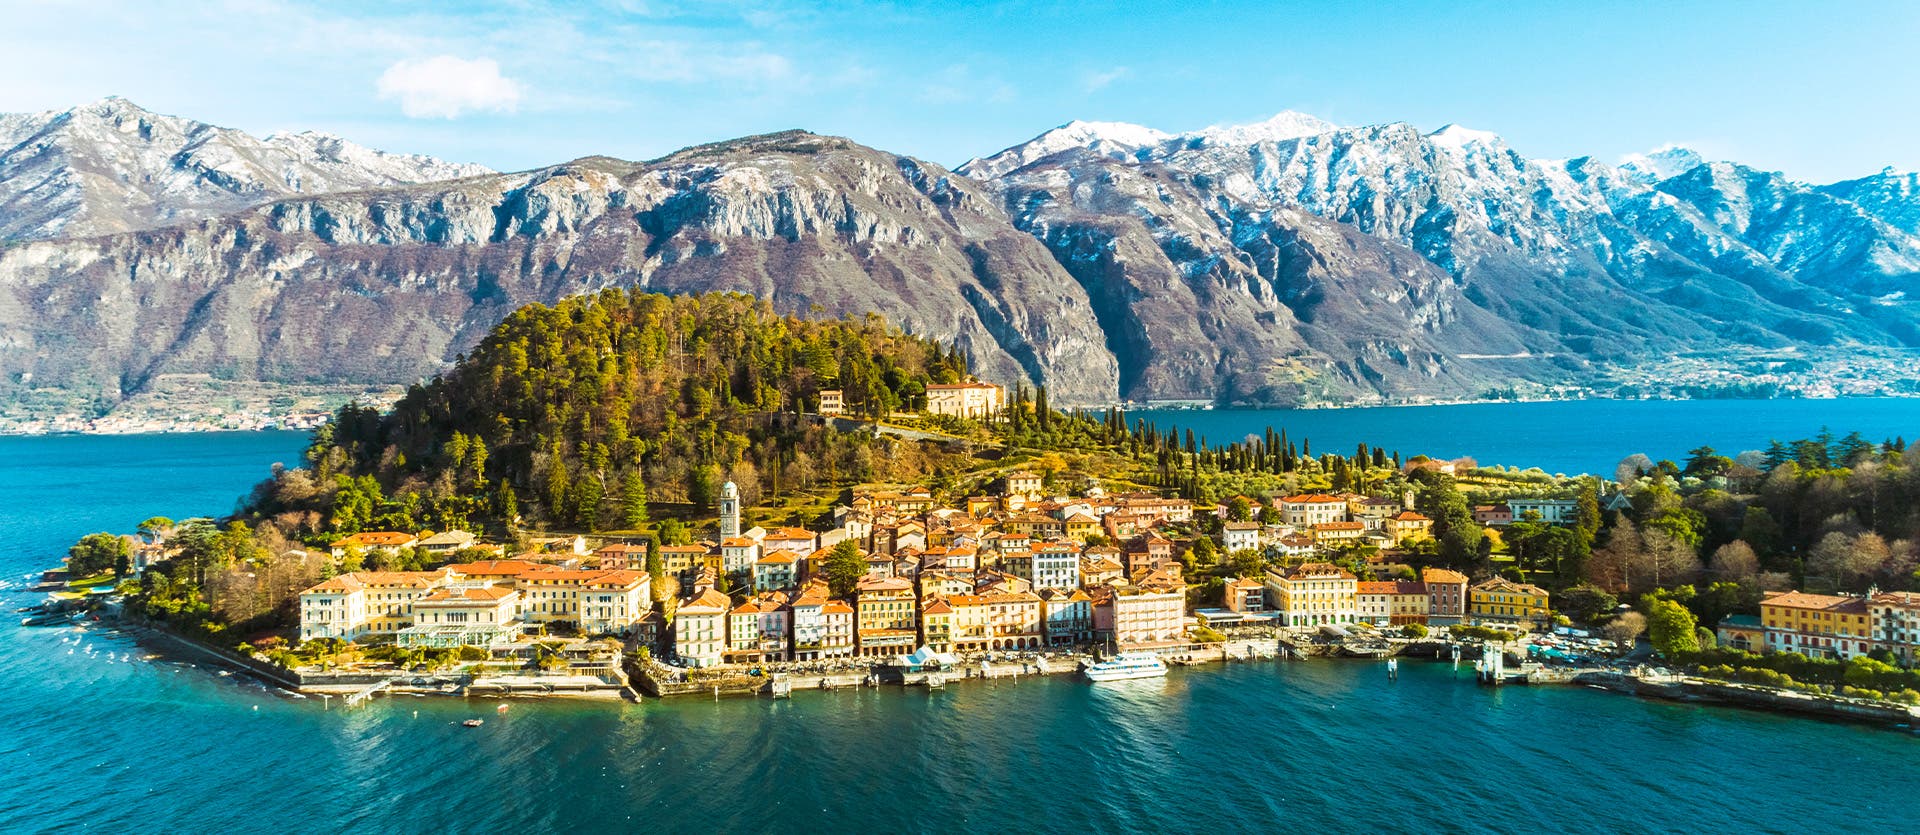 Qué ver en Italia Lago de Como